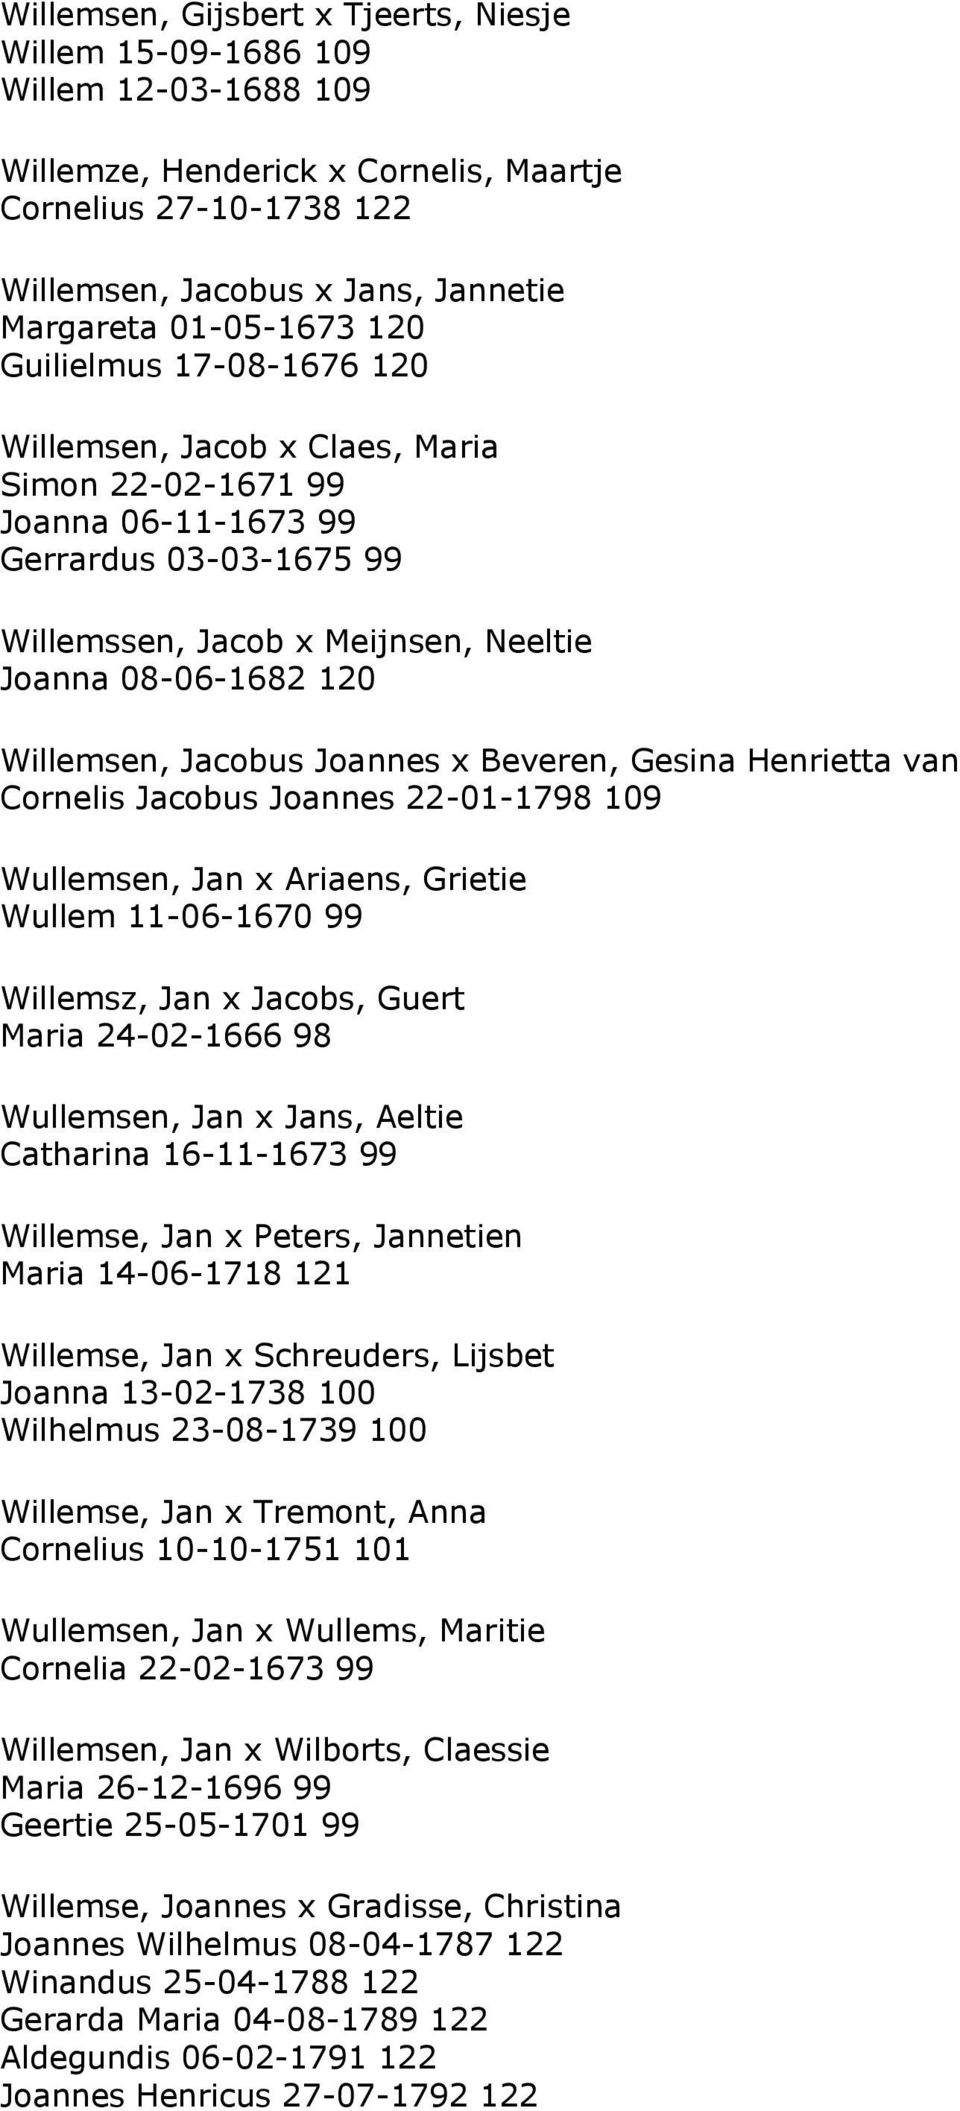 Willemsen, Jacobus Joannes x Beveren, Gesina Henrietta van Cornelis Jacobus Joannes 22-01-1798 109 Wullemsen, Jan x Ariaens, Grietie Wullem 11-06-1670 99 Willemsz, Jan x Jacobs, Guert Maria